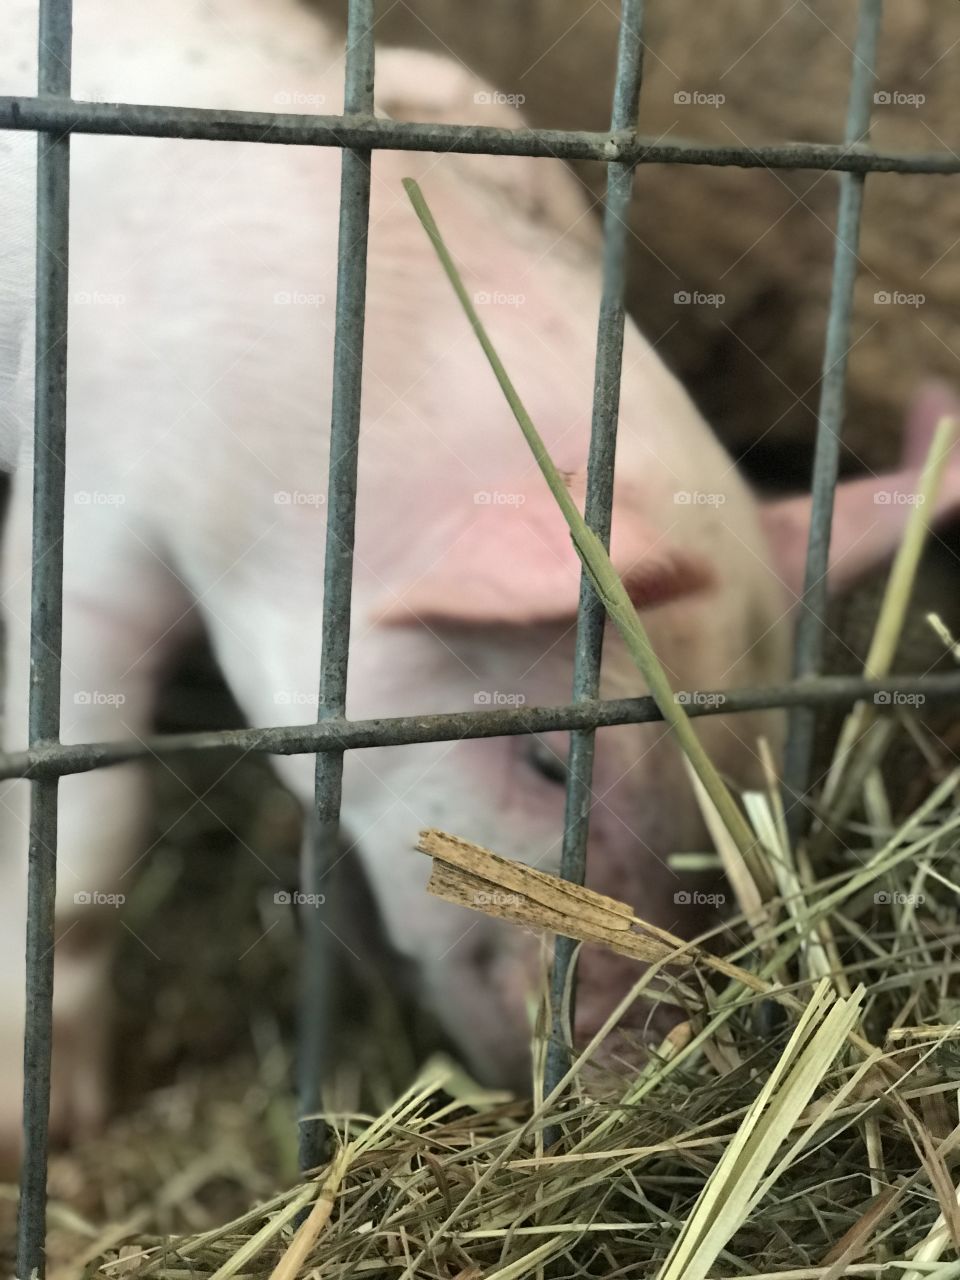 Piggy! 